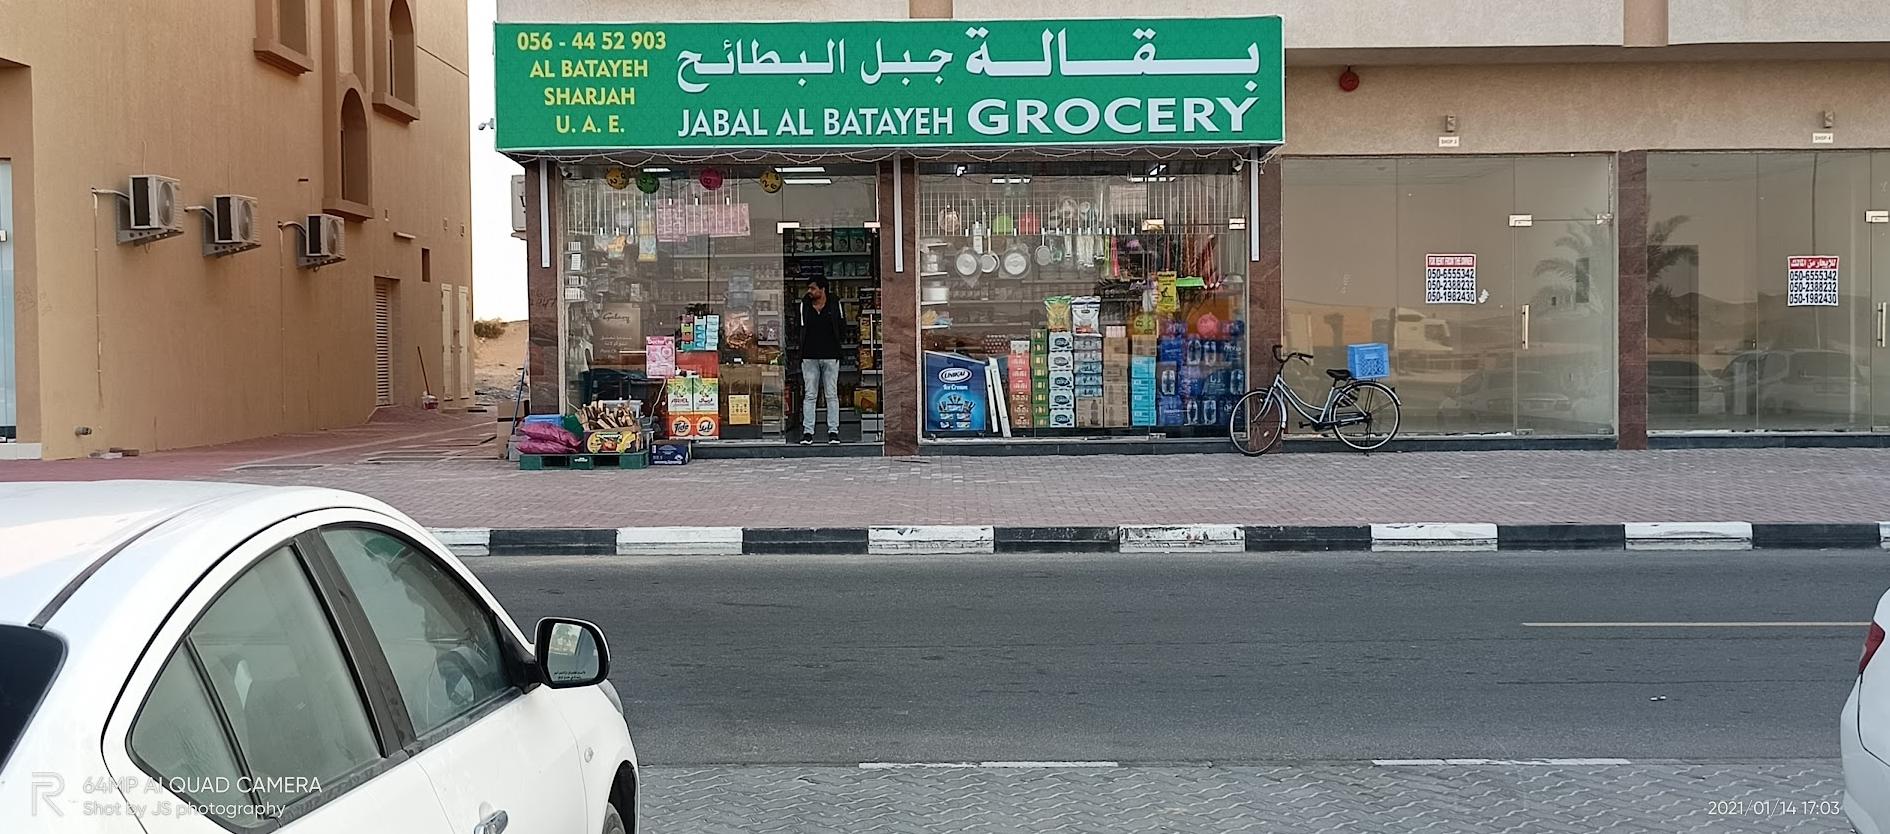 Negozio di generi alimentari Jabal Lal Batayeh